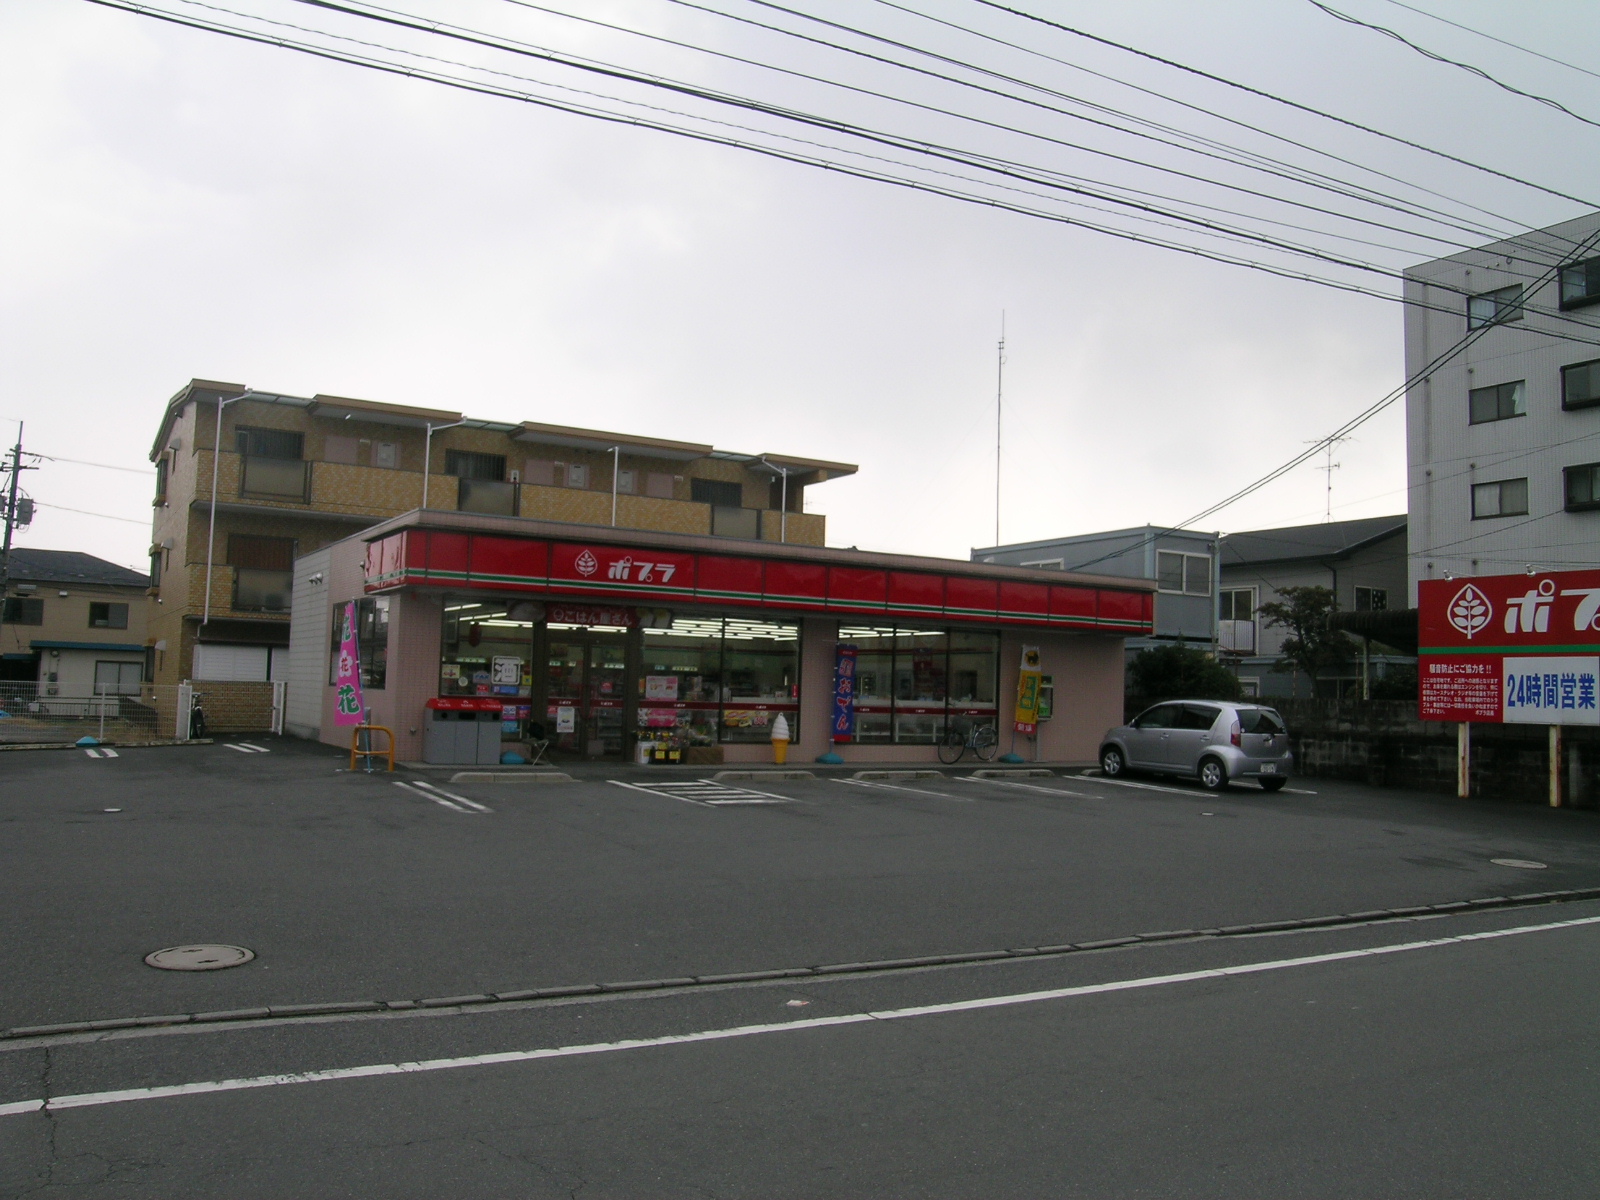 Convenience store. Poplar Itsukaichi central North store up (convenience store) 538m